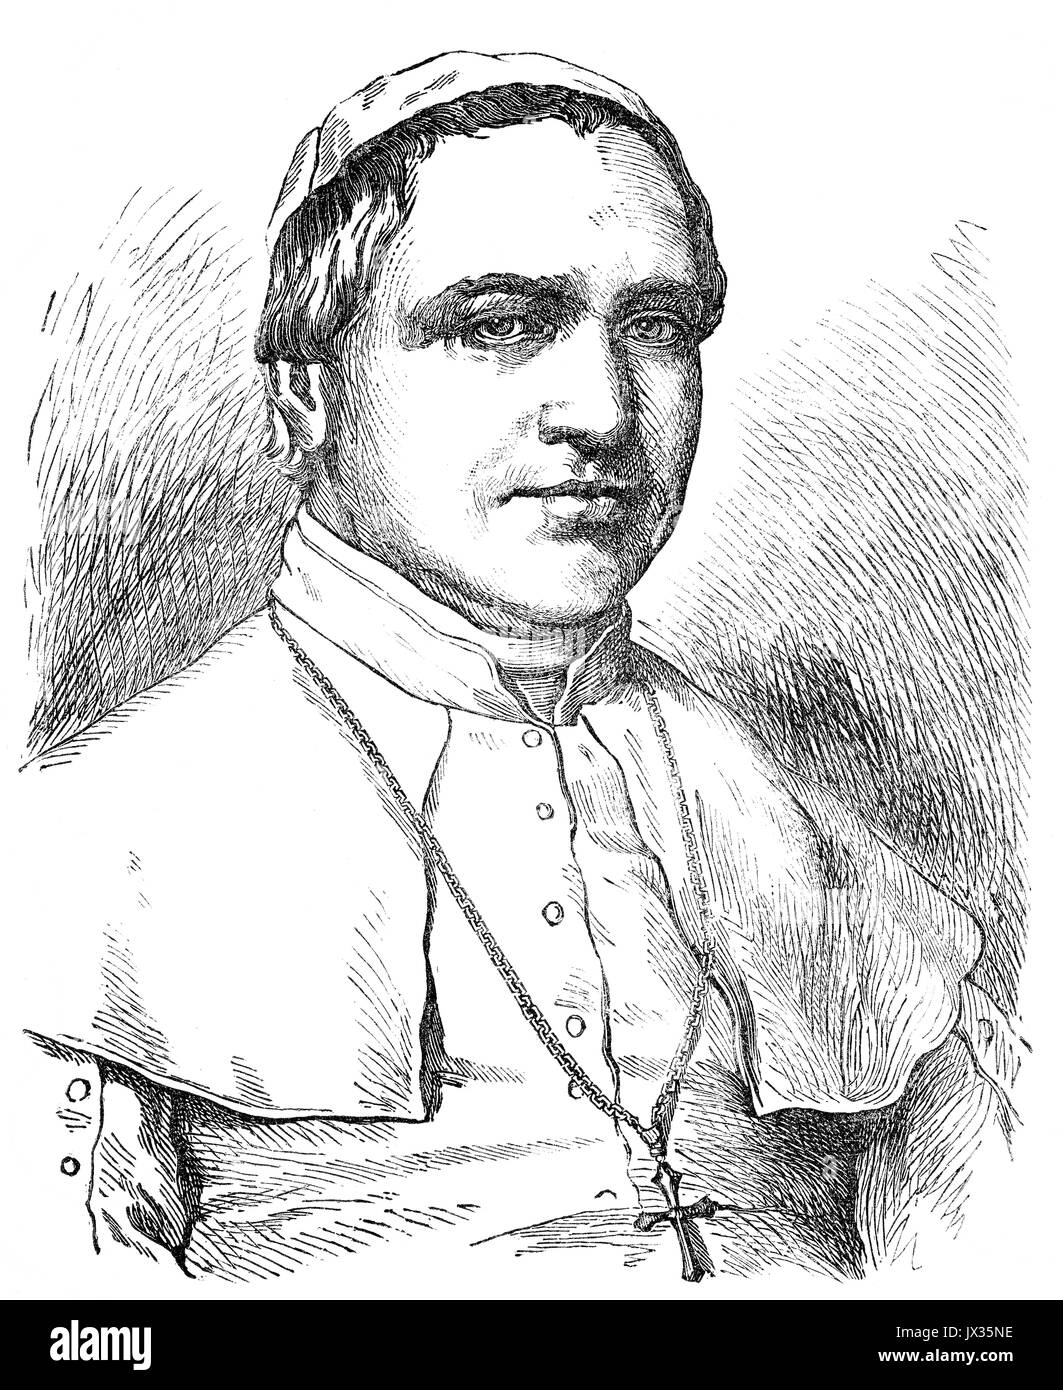 Le pape Pie IX, le 13 mai 1792 - 7 février 1878, régna en tant que Pape du 16 juin 1846 à sa mort Banque D'Images